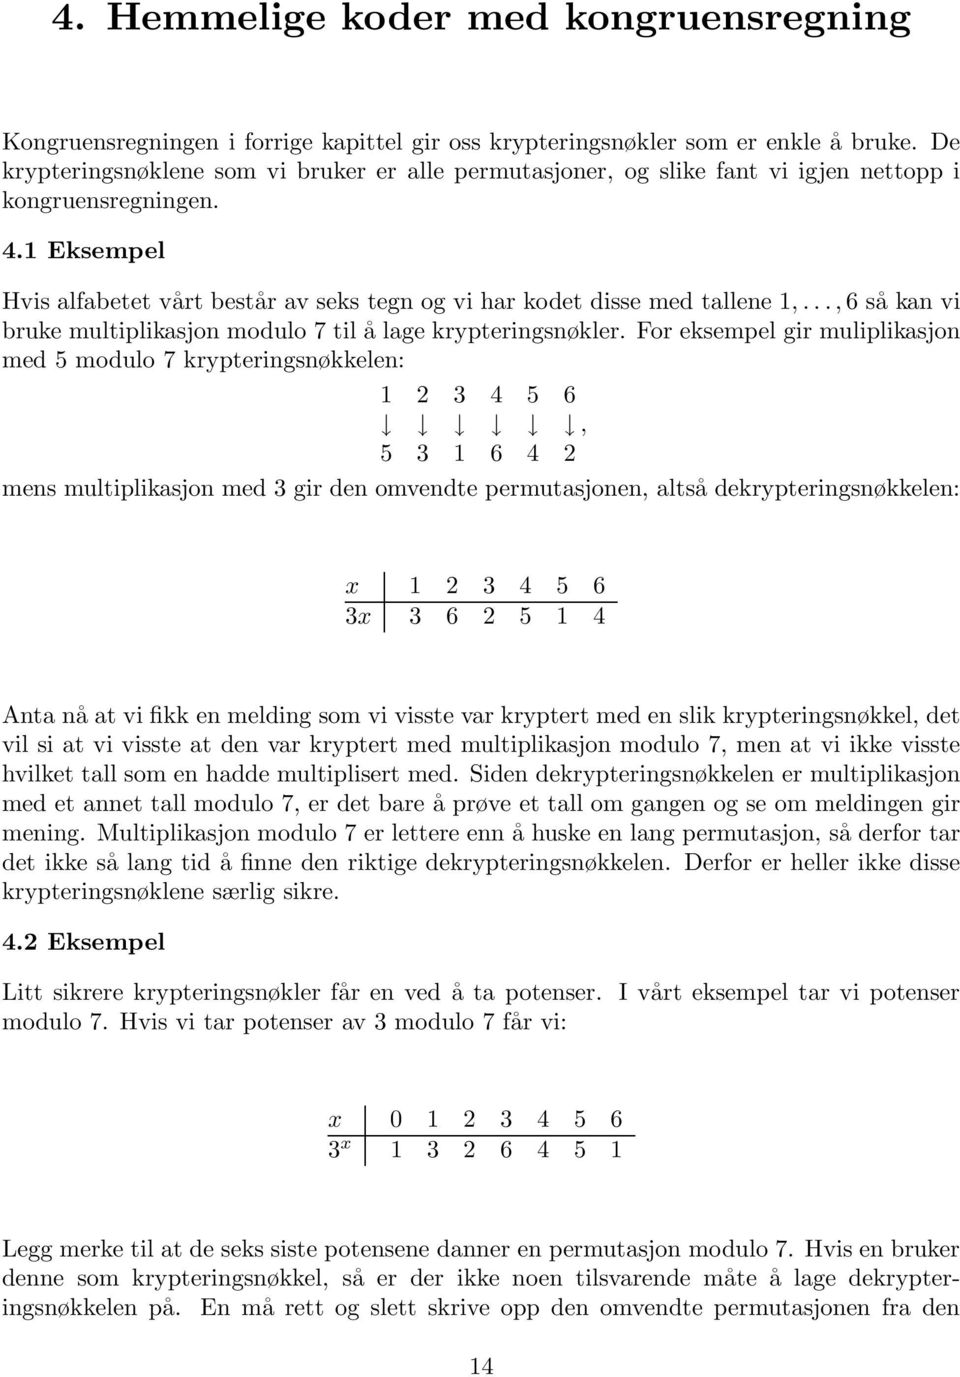 1 Eksempel Hvis alfabetet vårt består av seks tegn og vi har kodet disse med tallene 1,..., 6 så kan vi bruke multiplikasjon modulo 7 til å lage krypteringsnøkler.